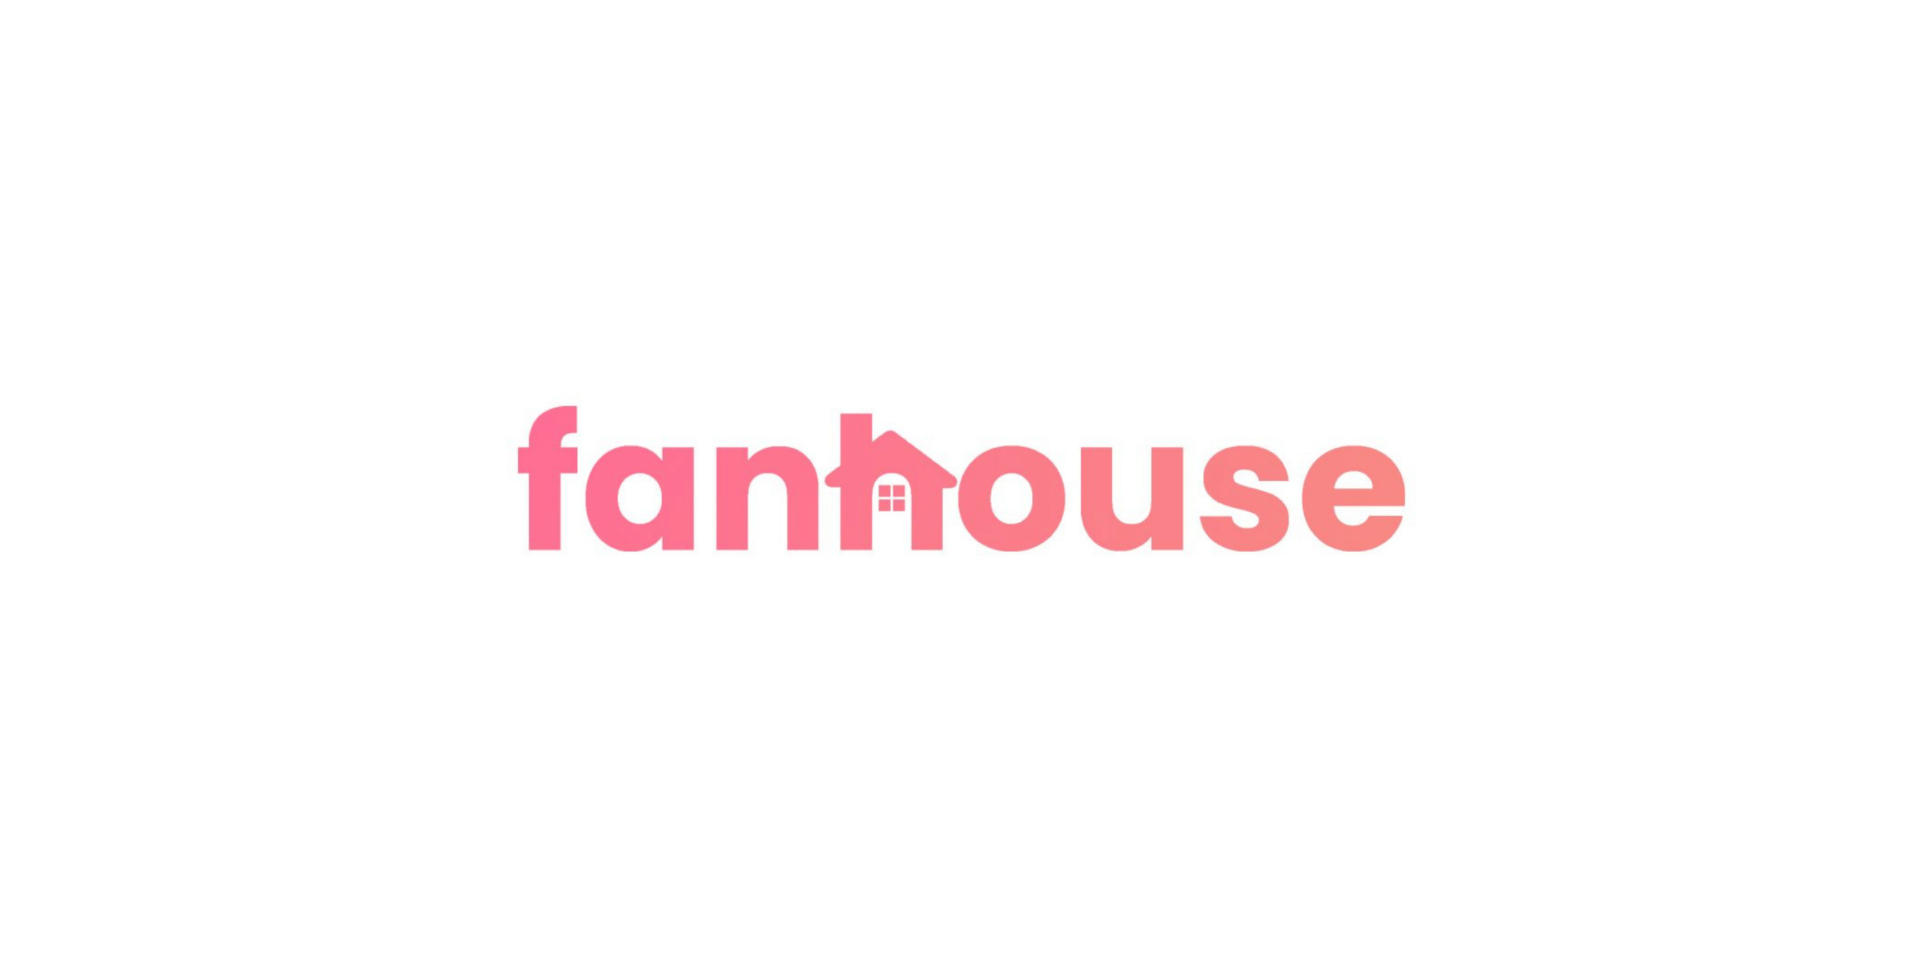 fanhouse logo spenden und creator verdienst tool